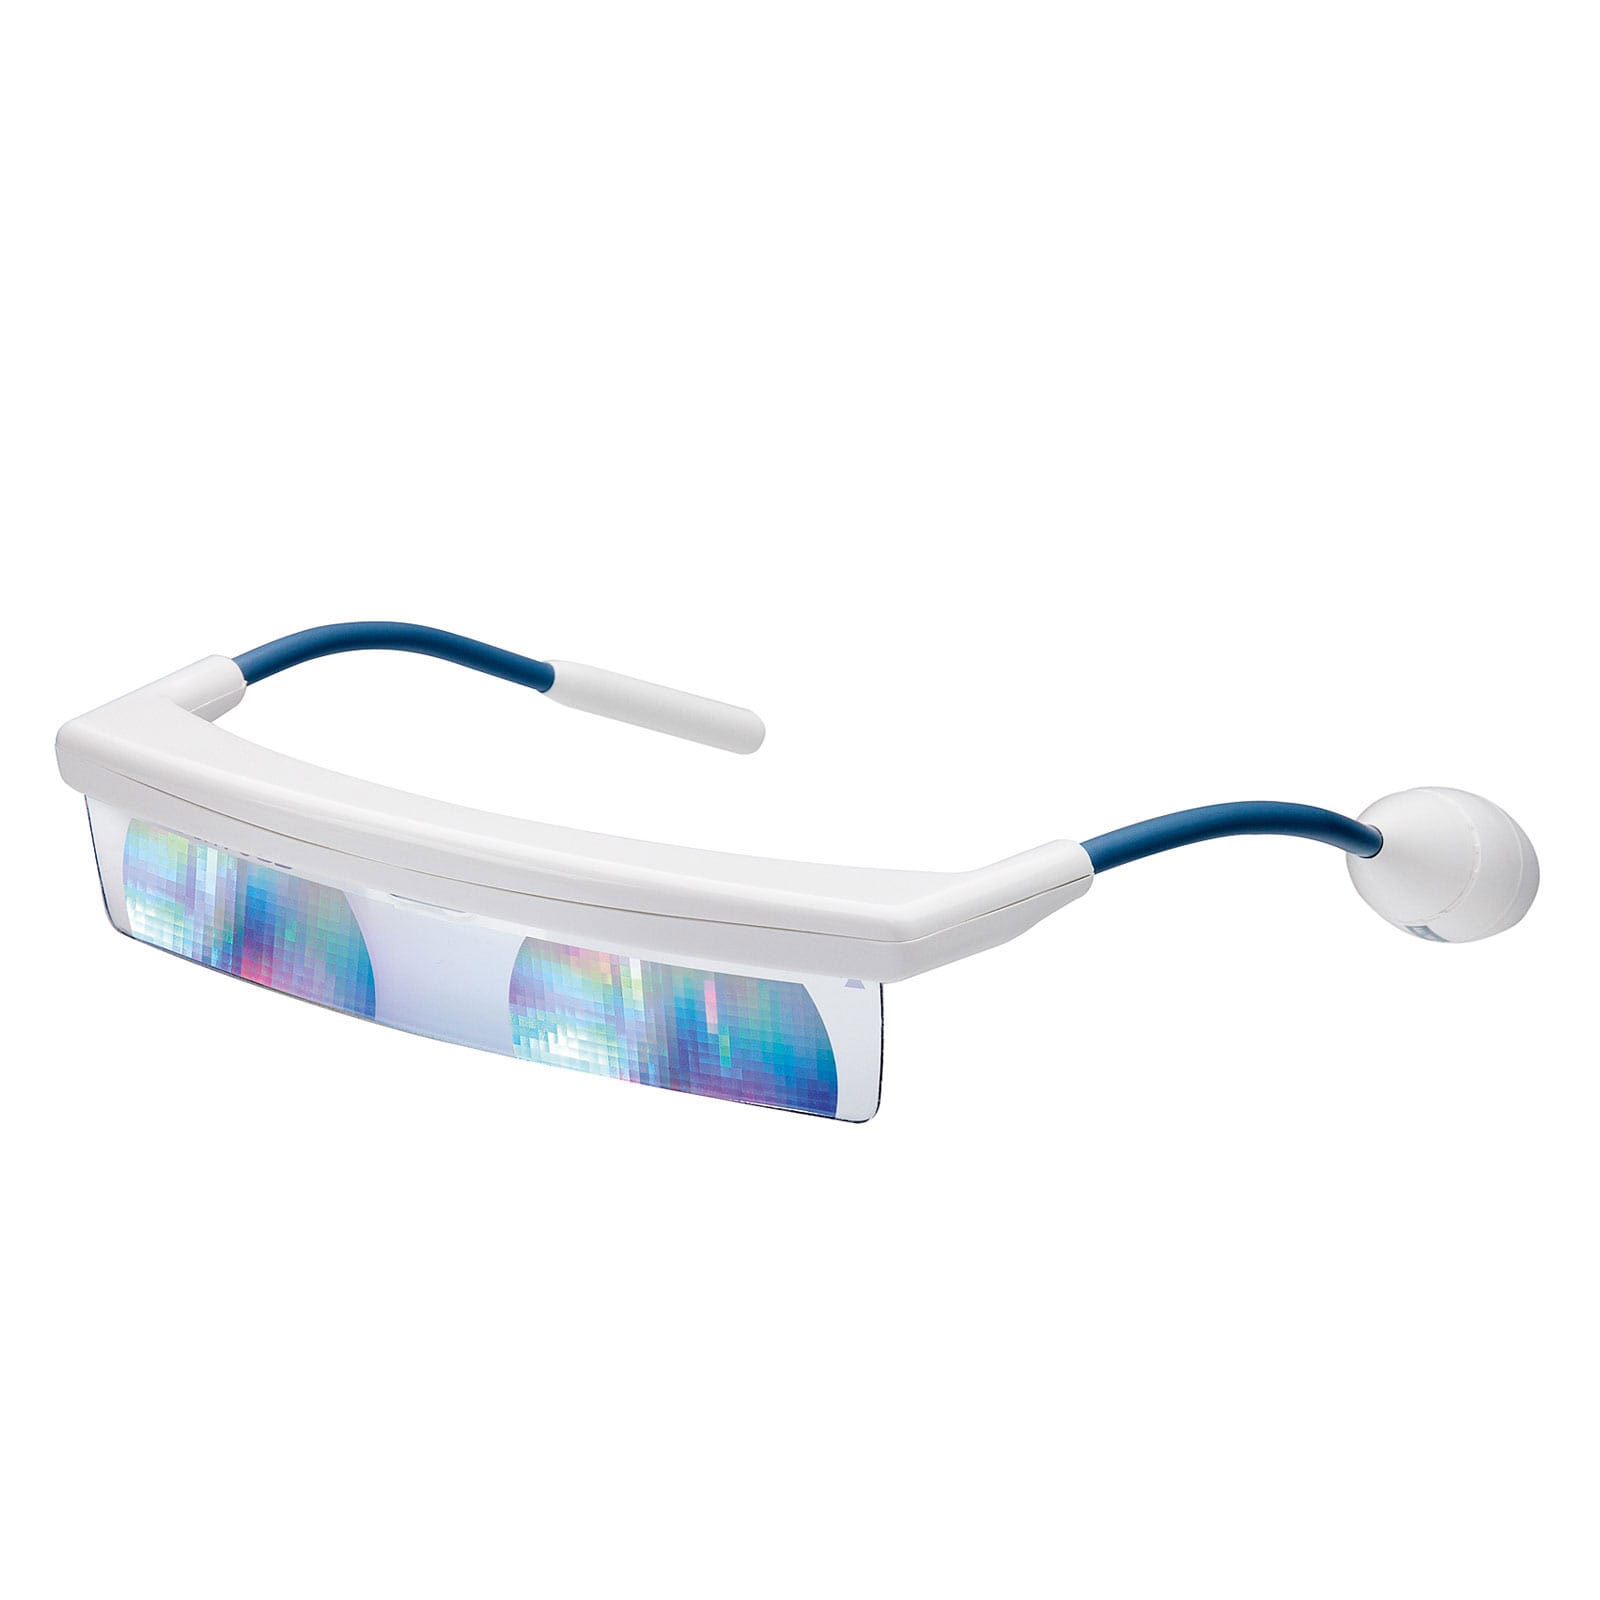 Luminette: Ces lunettes de luminothérapie sont-elles un bon remède